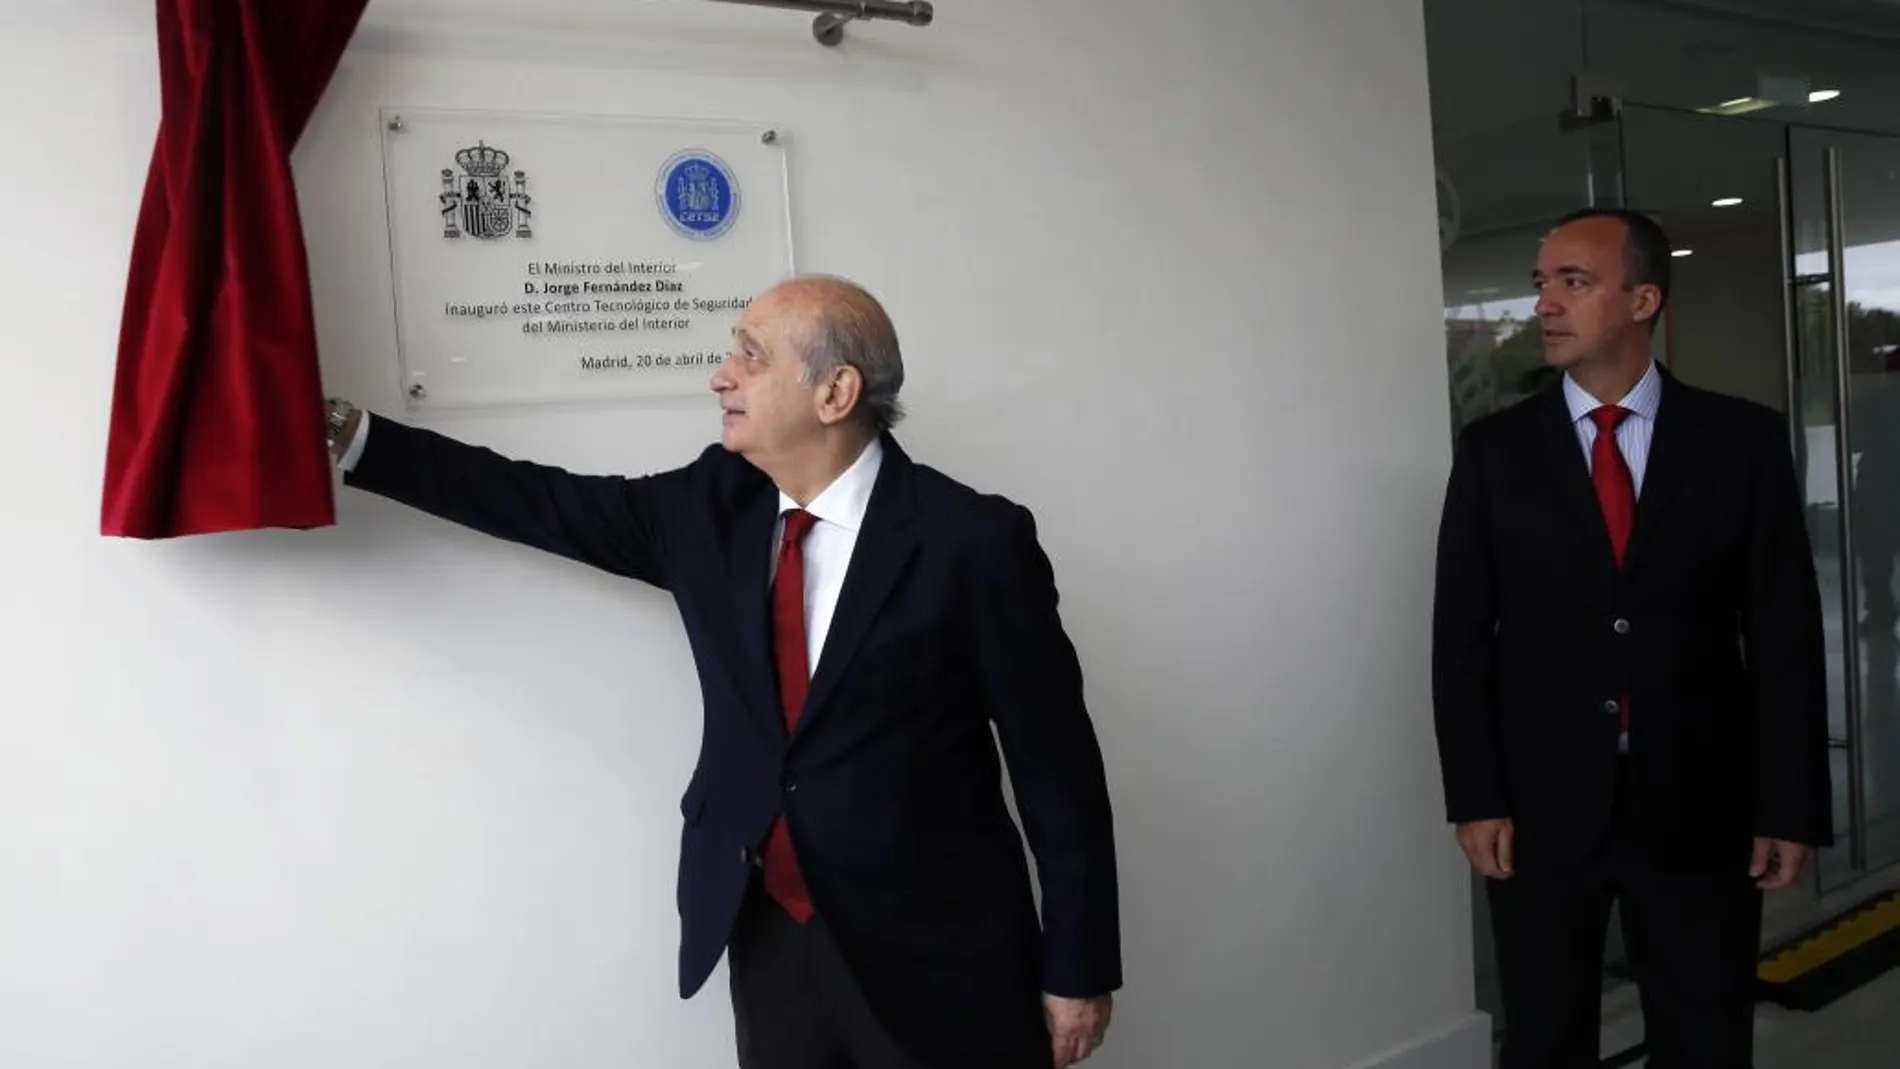 El ministro del Interior, Jorge Fernández Díaz, durante la inauguración del nuevo Centro Tecnológico de Seguridad (CETSE)